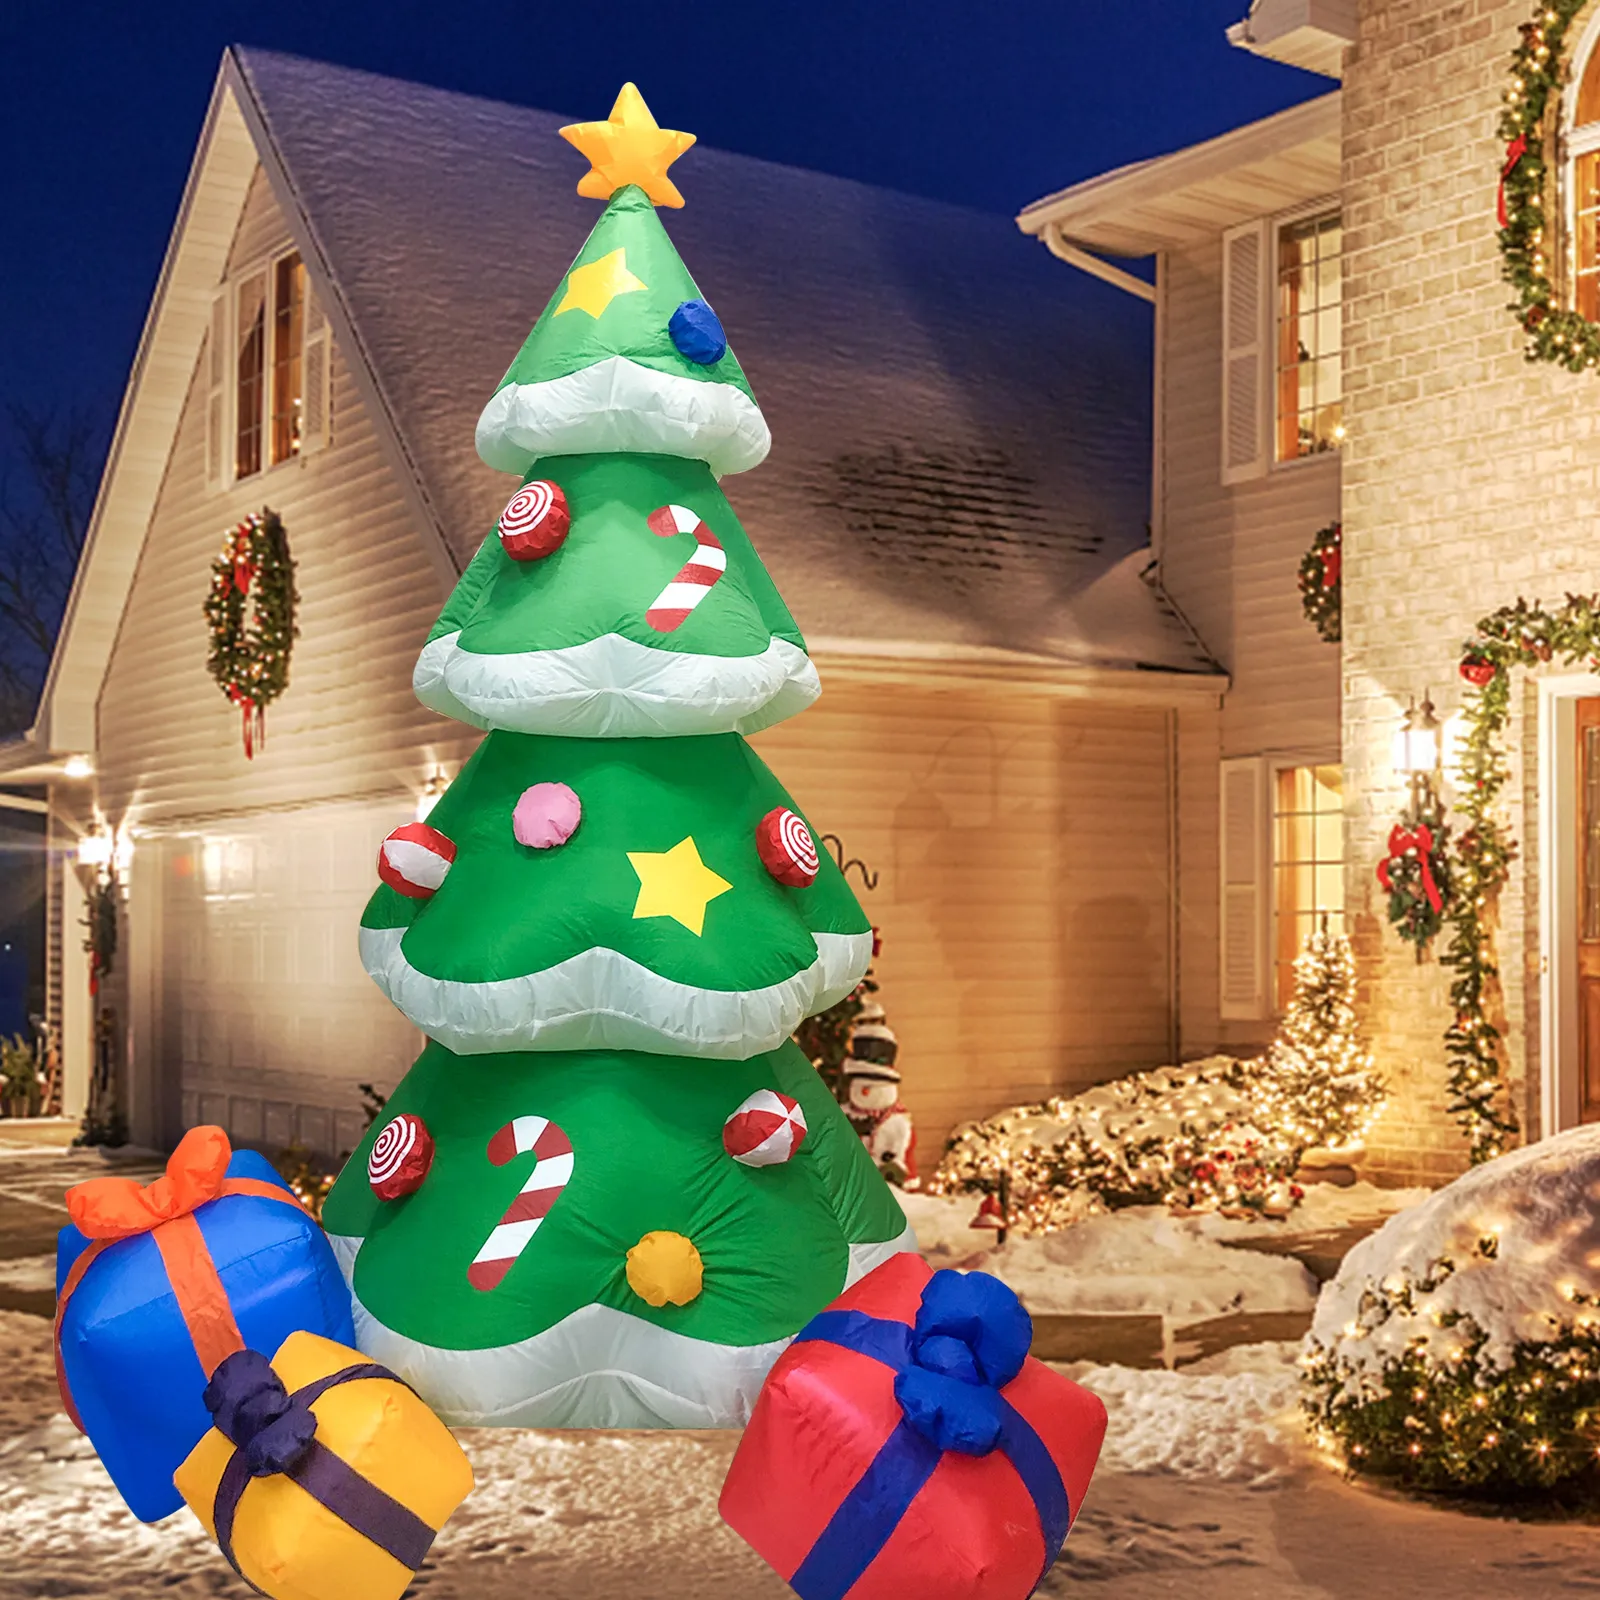 2 1m arbre de Noël jardin décoration extérieure éclairage RVB gonflable arbres de Noël gonflables modèle festival accessoires de lumière bonbons cane259O